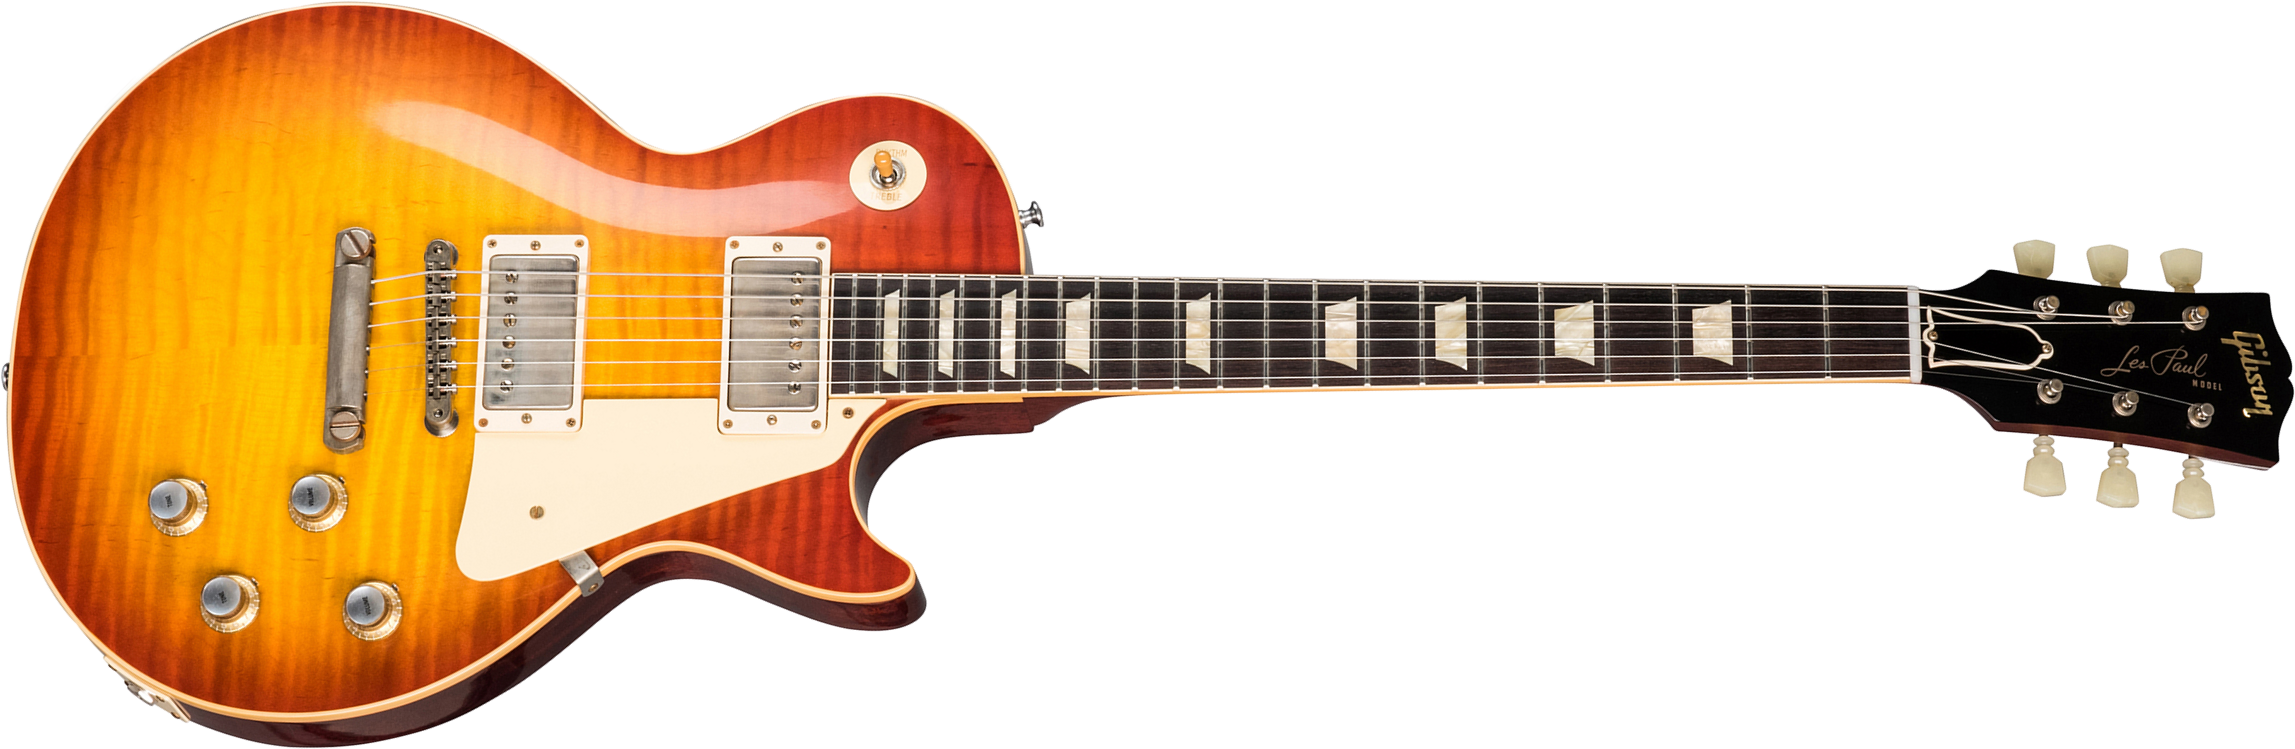 Gibson Custom Shop Les Paul Standard 1960 Reissue 2019 2h Ht Rw - Vos Washed Cherry Sunburst - Enkel gesneden elektrische gitaar - Main picture